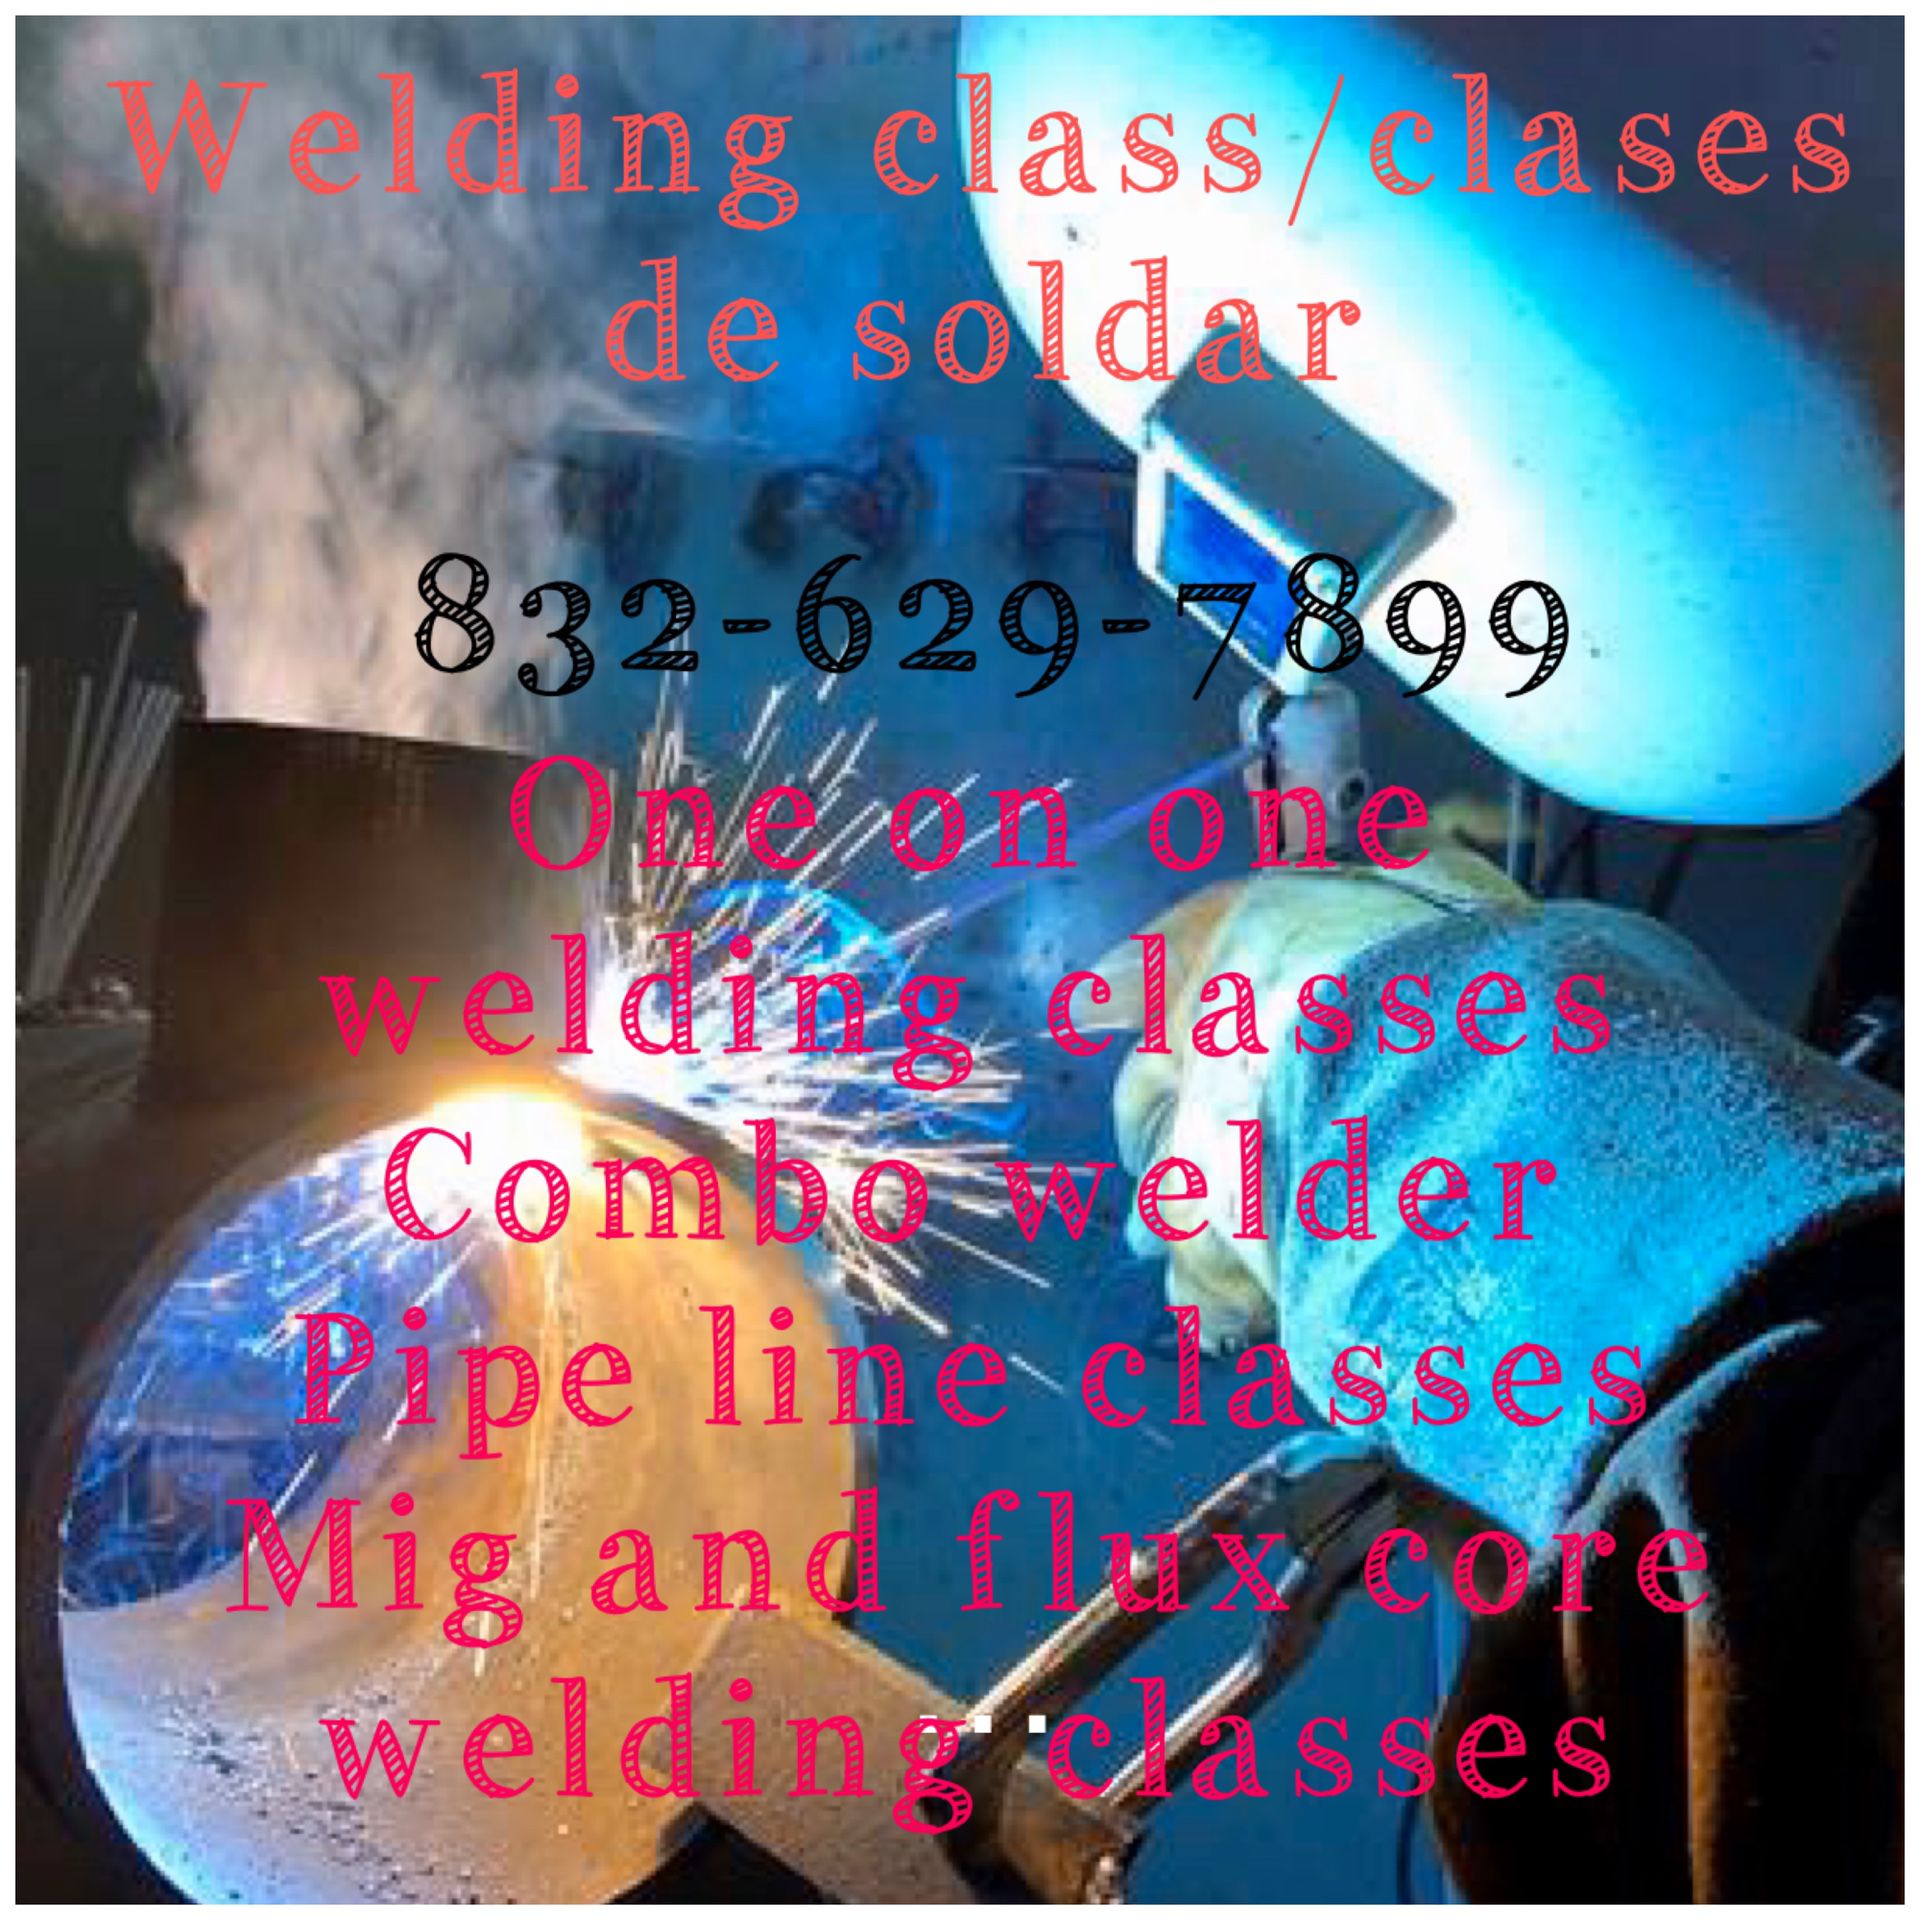 Welder classes